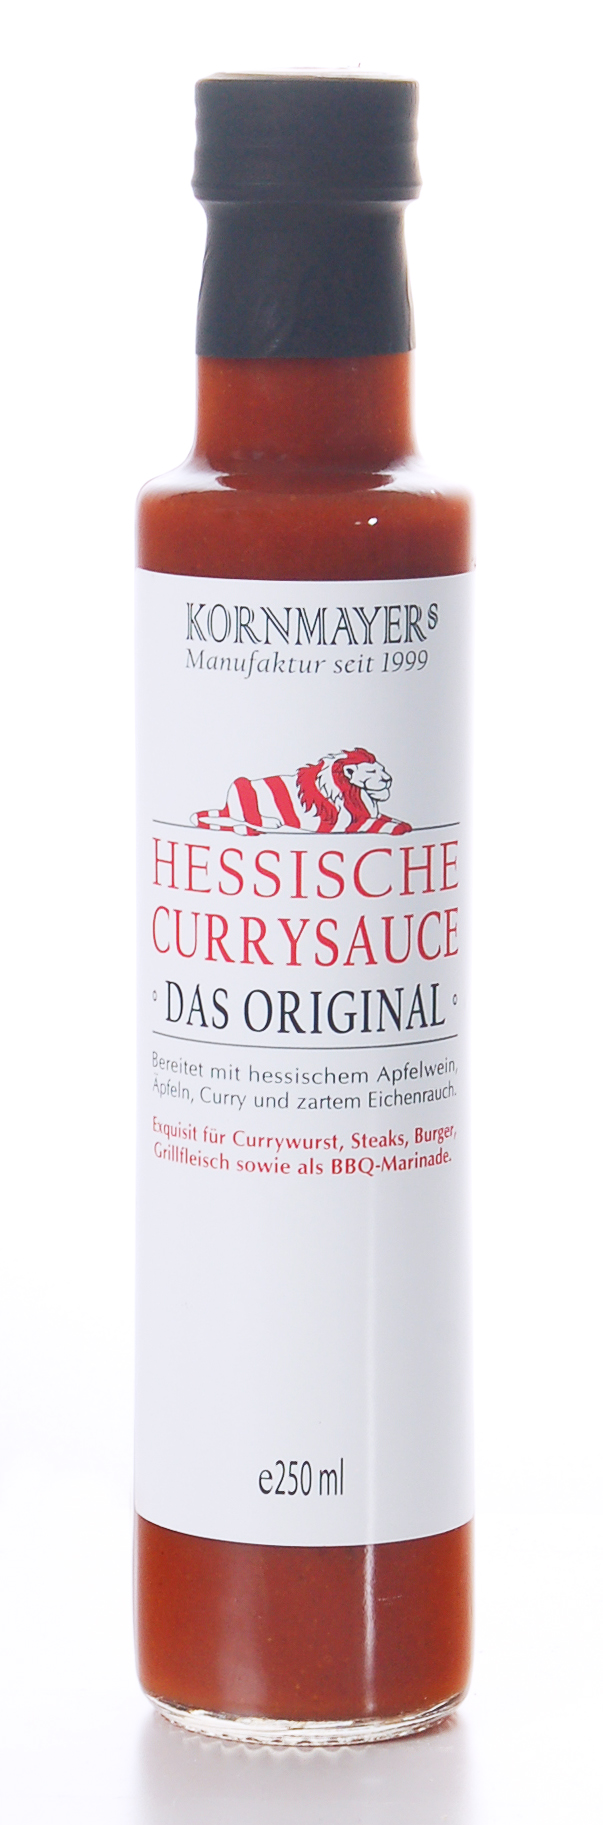 Hessische Currysauce – Das Original